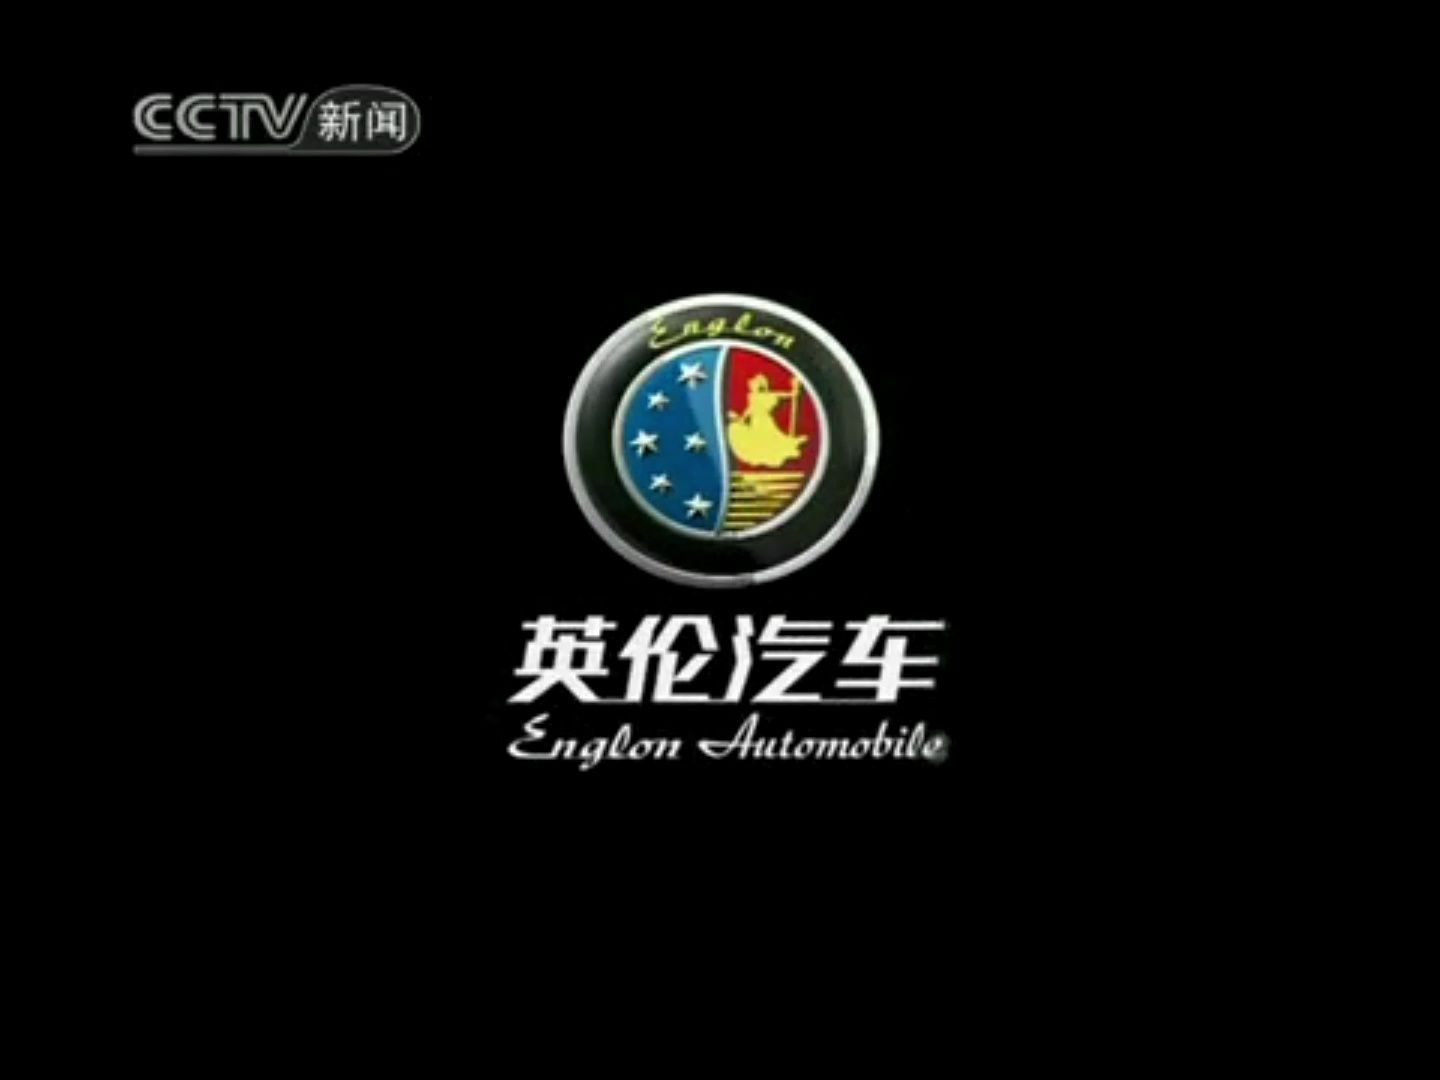 【广播电视】CCTV-新闻《共同关注》OP+部分提要+间场广告两则+部分新闻片段+部分新闻回顾+ED+结束后广告+天气预报（2010.12.28）